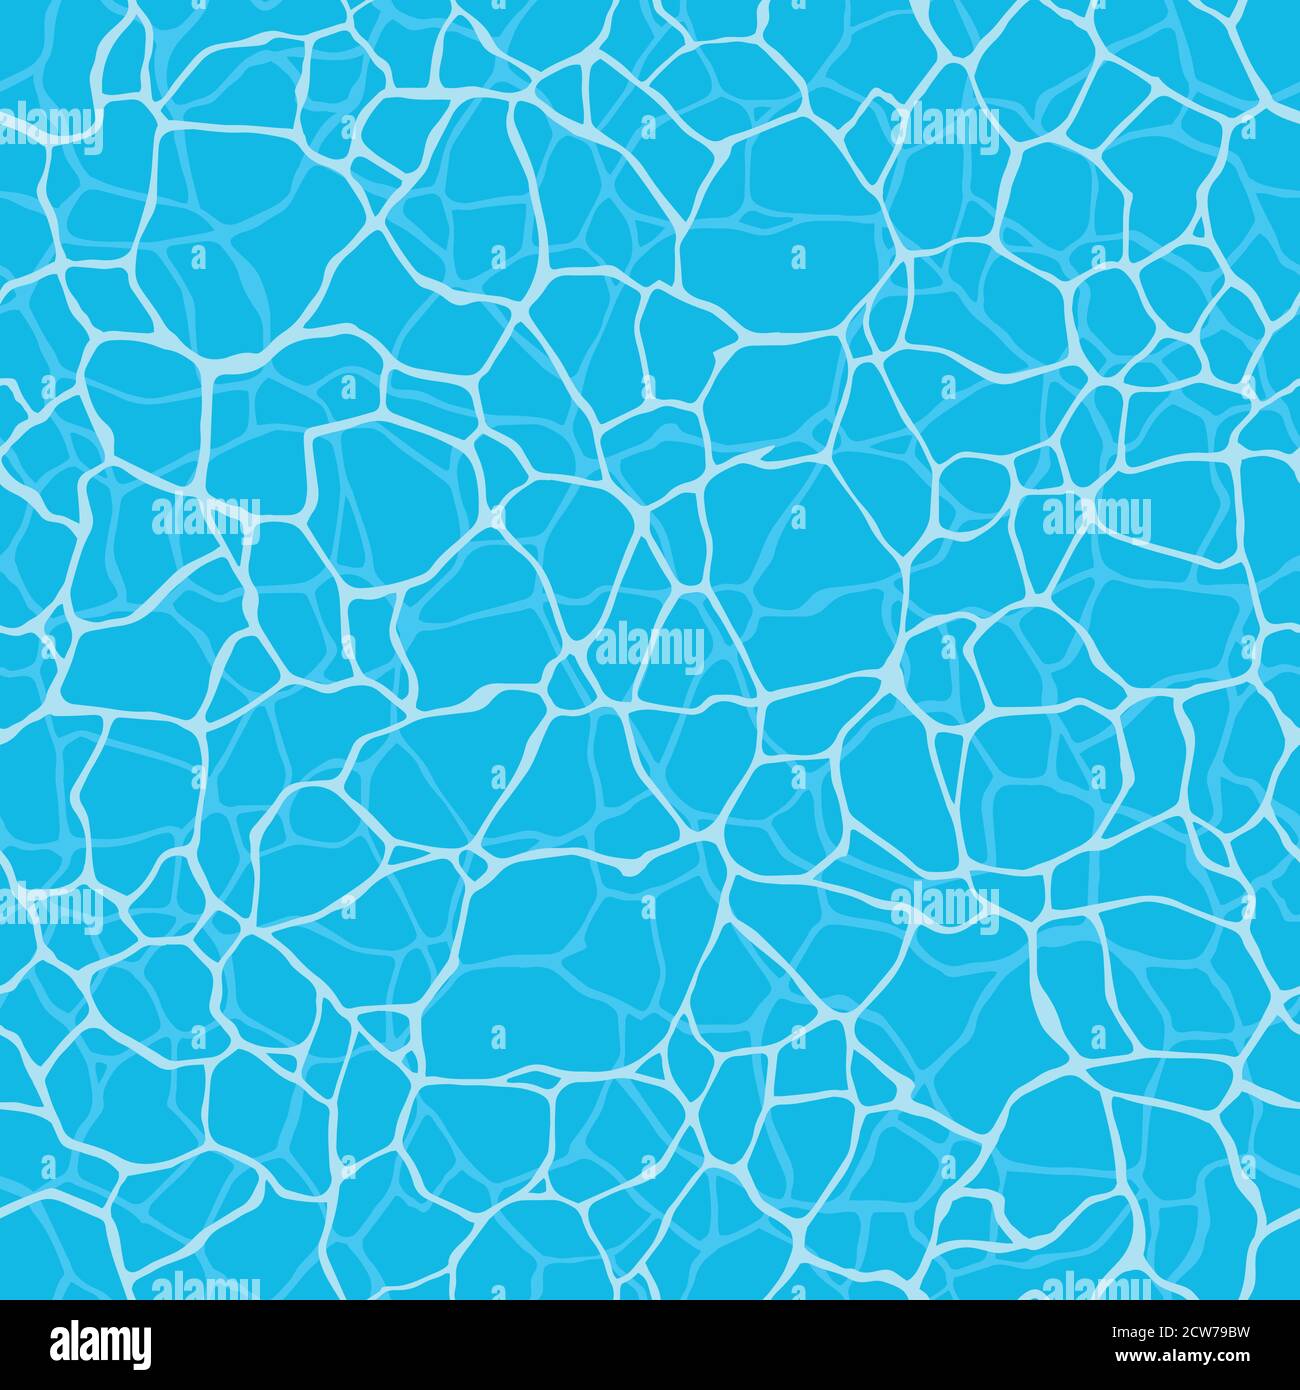 Nahtlose Wasserwelligkeit mit glänzendem Wasseroberfläche Muster. Oberflächenstruktur des Swimmingpools. Abstrakter blauer Wellenhintergrund. Vektorgrafik für Grap Stock Vektor